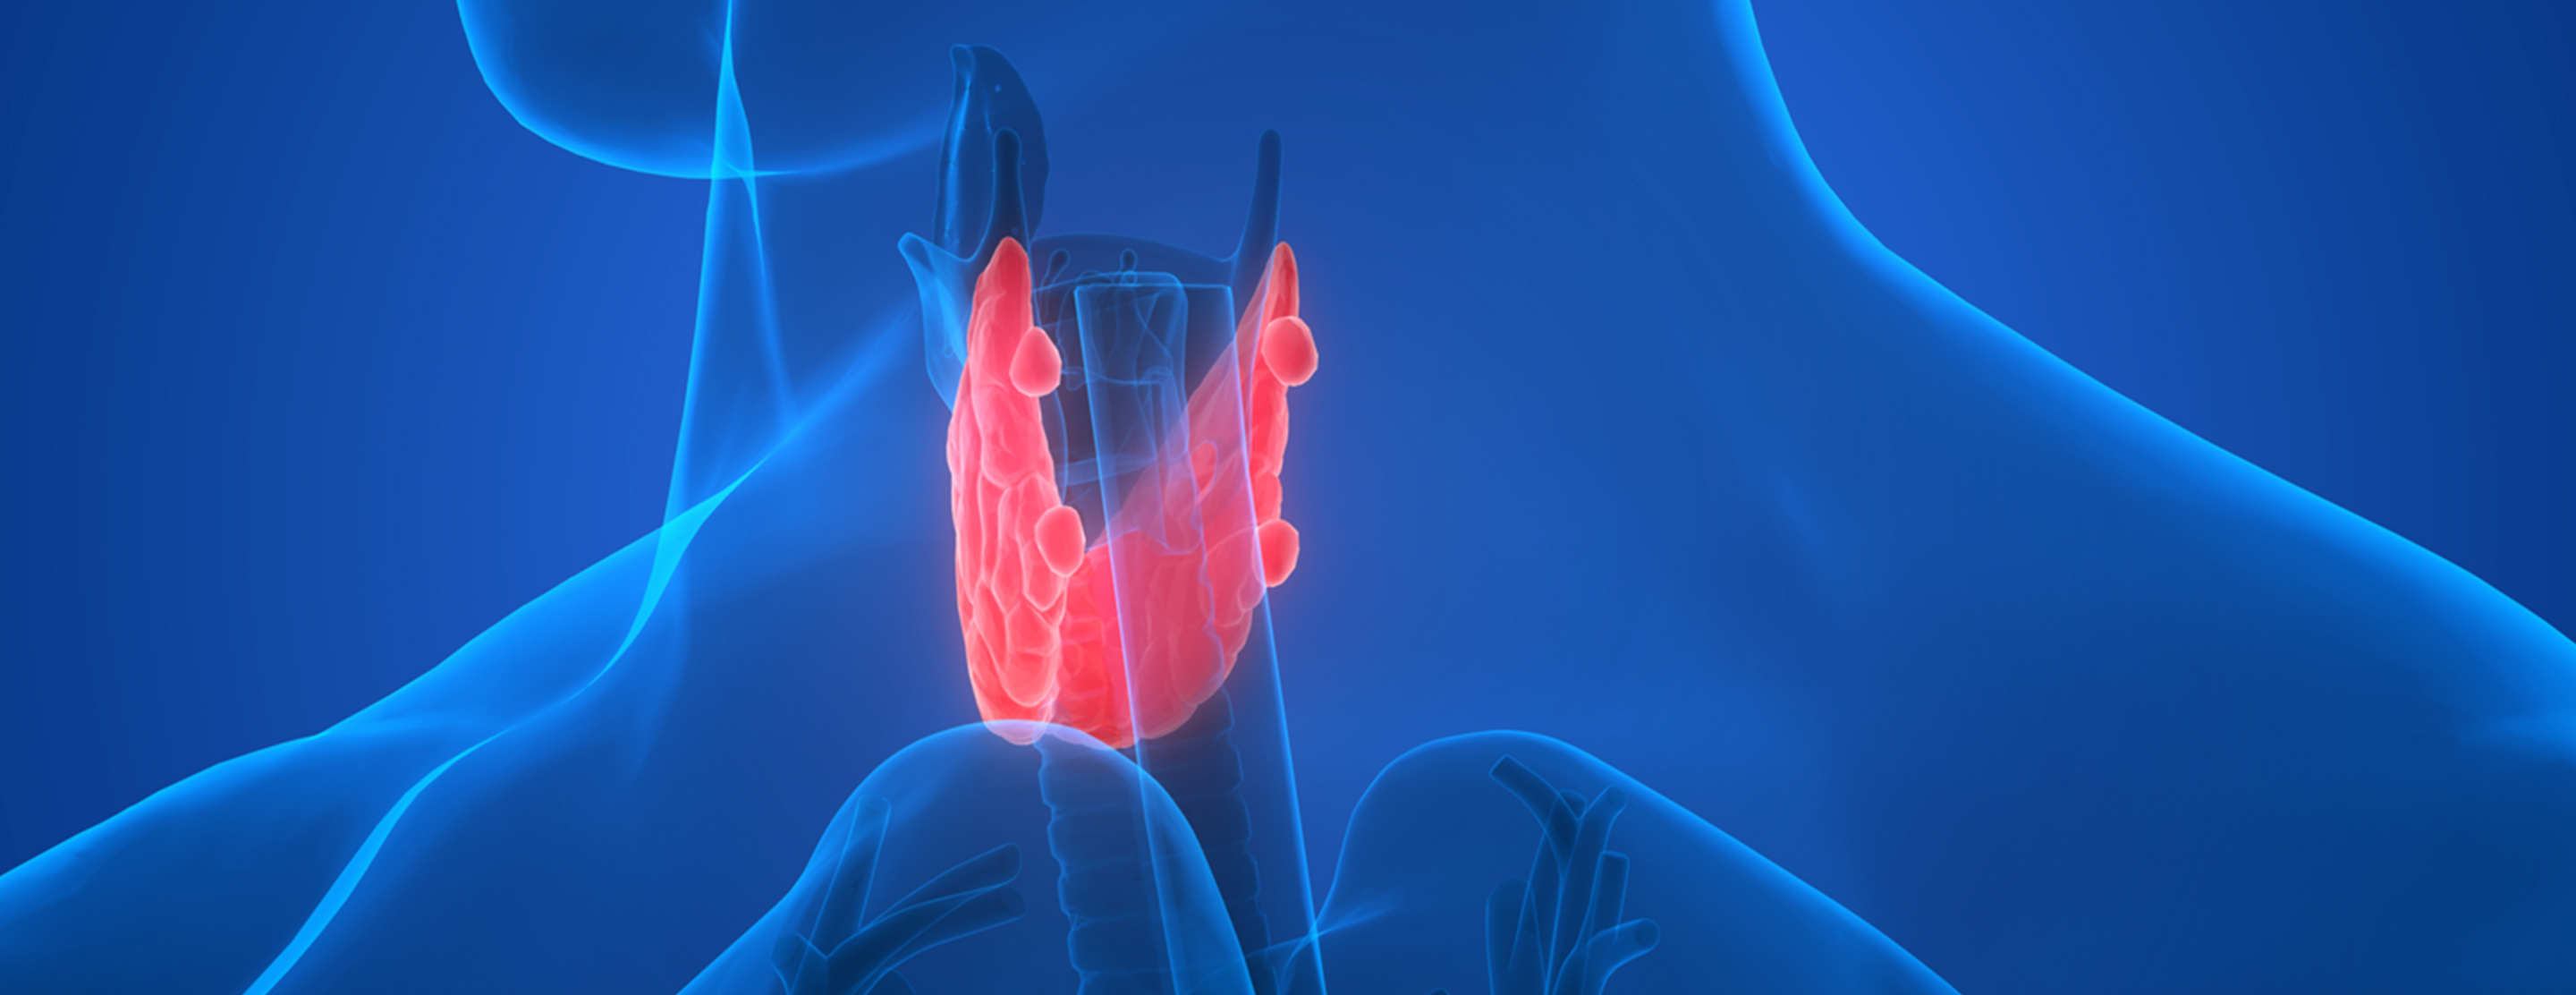 Тест заболевания щитовидной железы. Эндокринология щитовидная железа. Щитовидная железа на синем фоне. Щитовидка реклама.